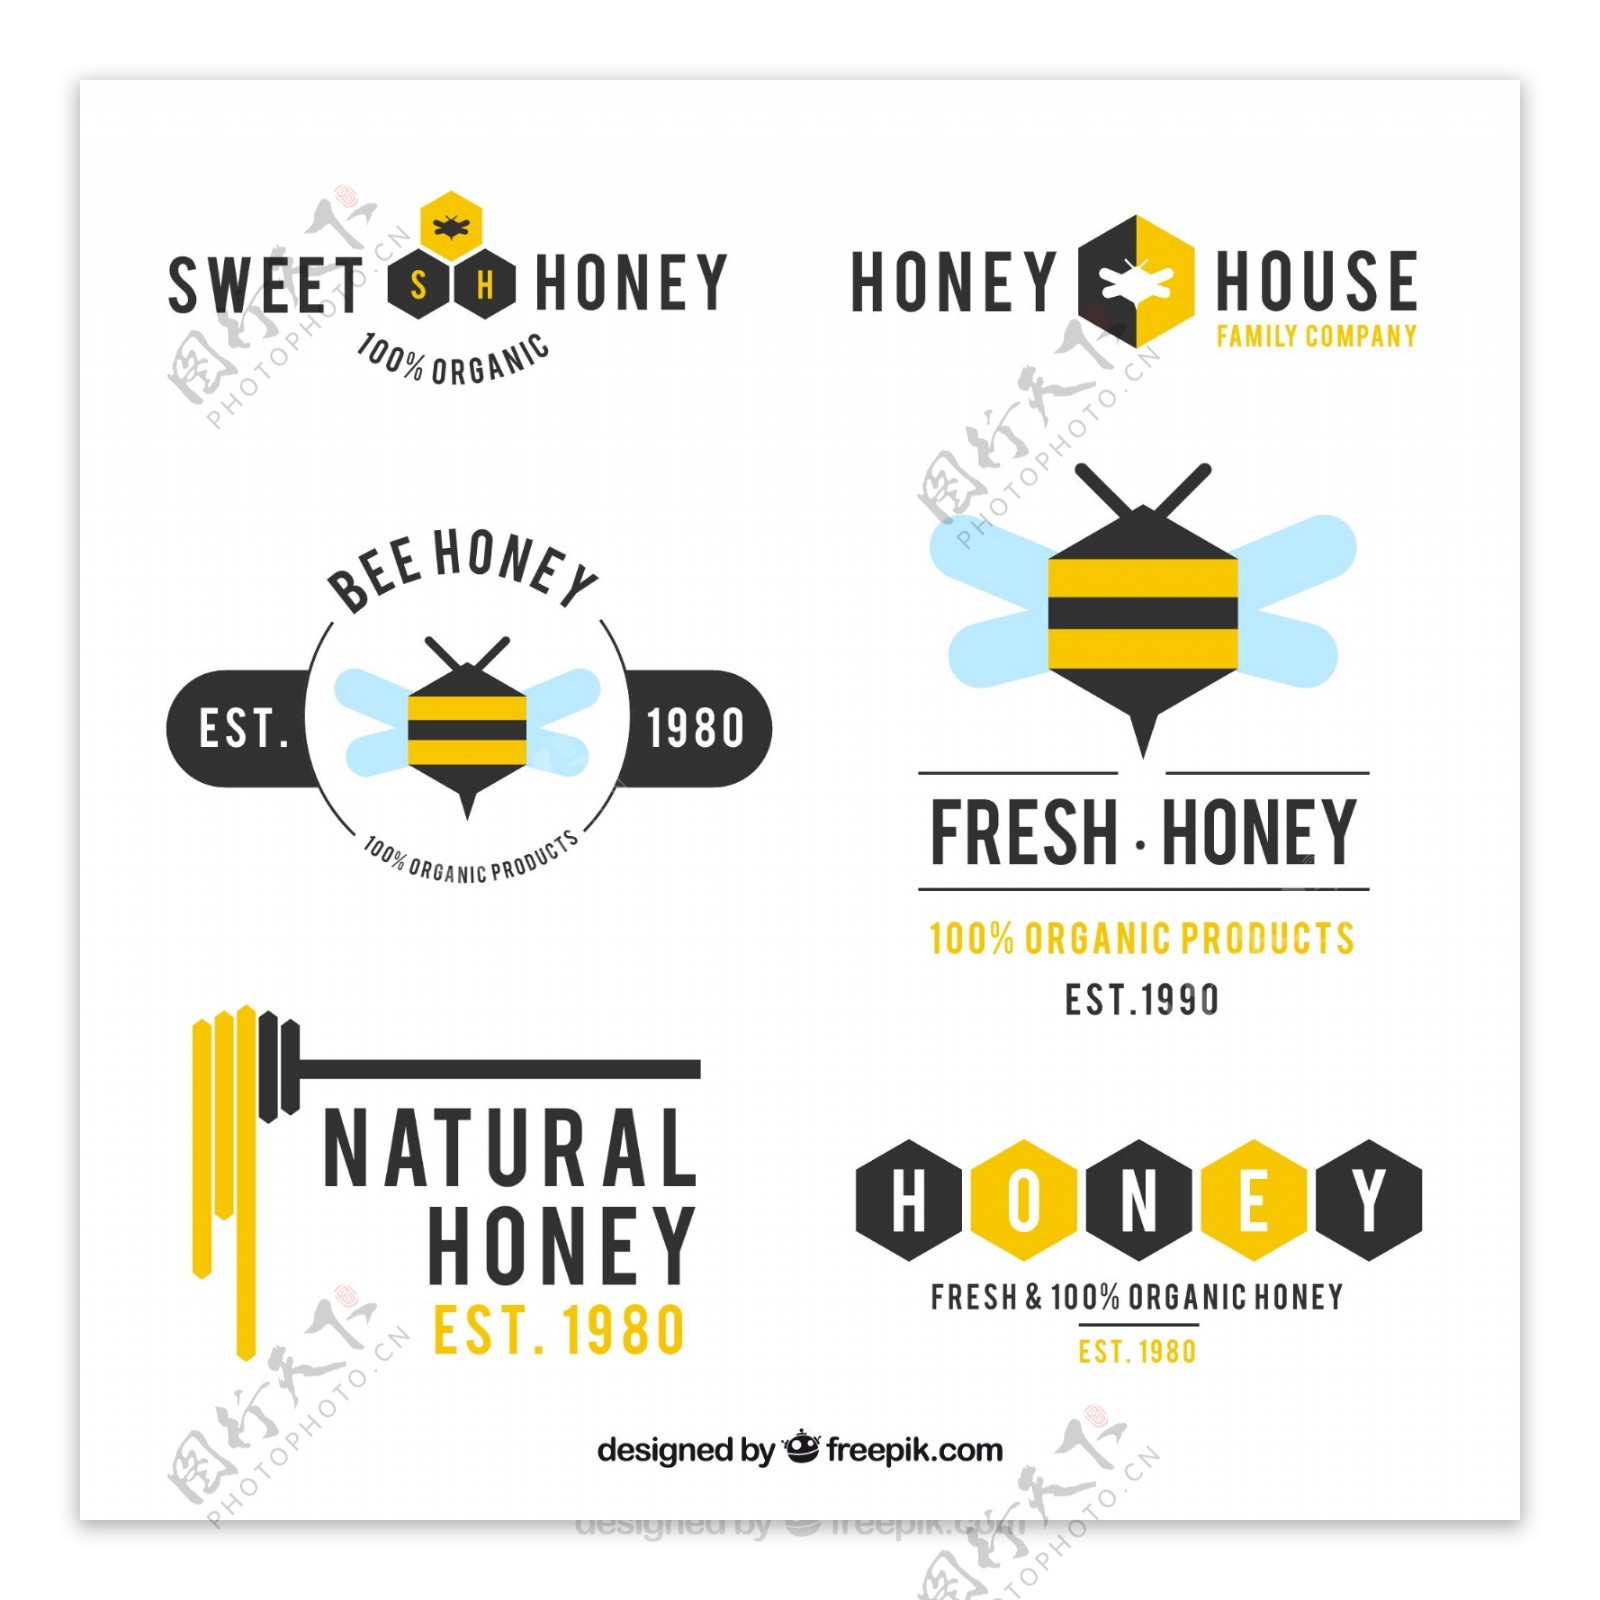 蜂蜜现代标志